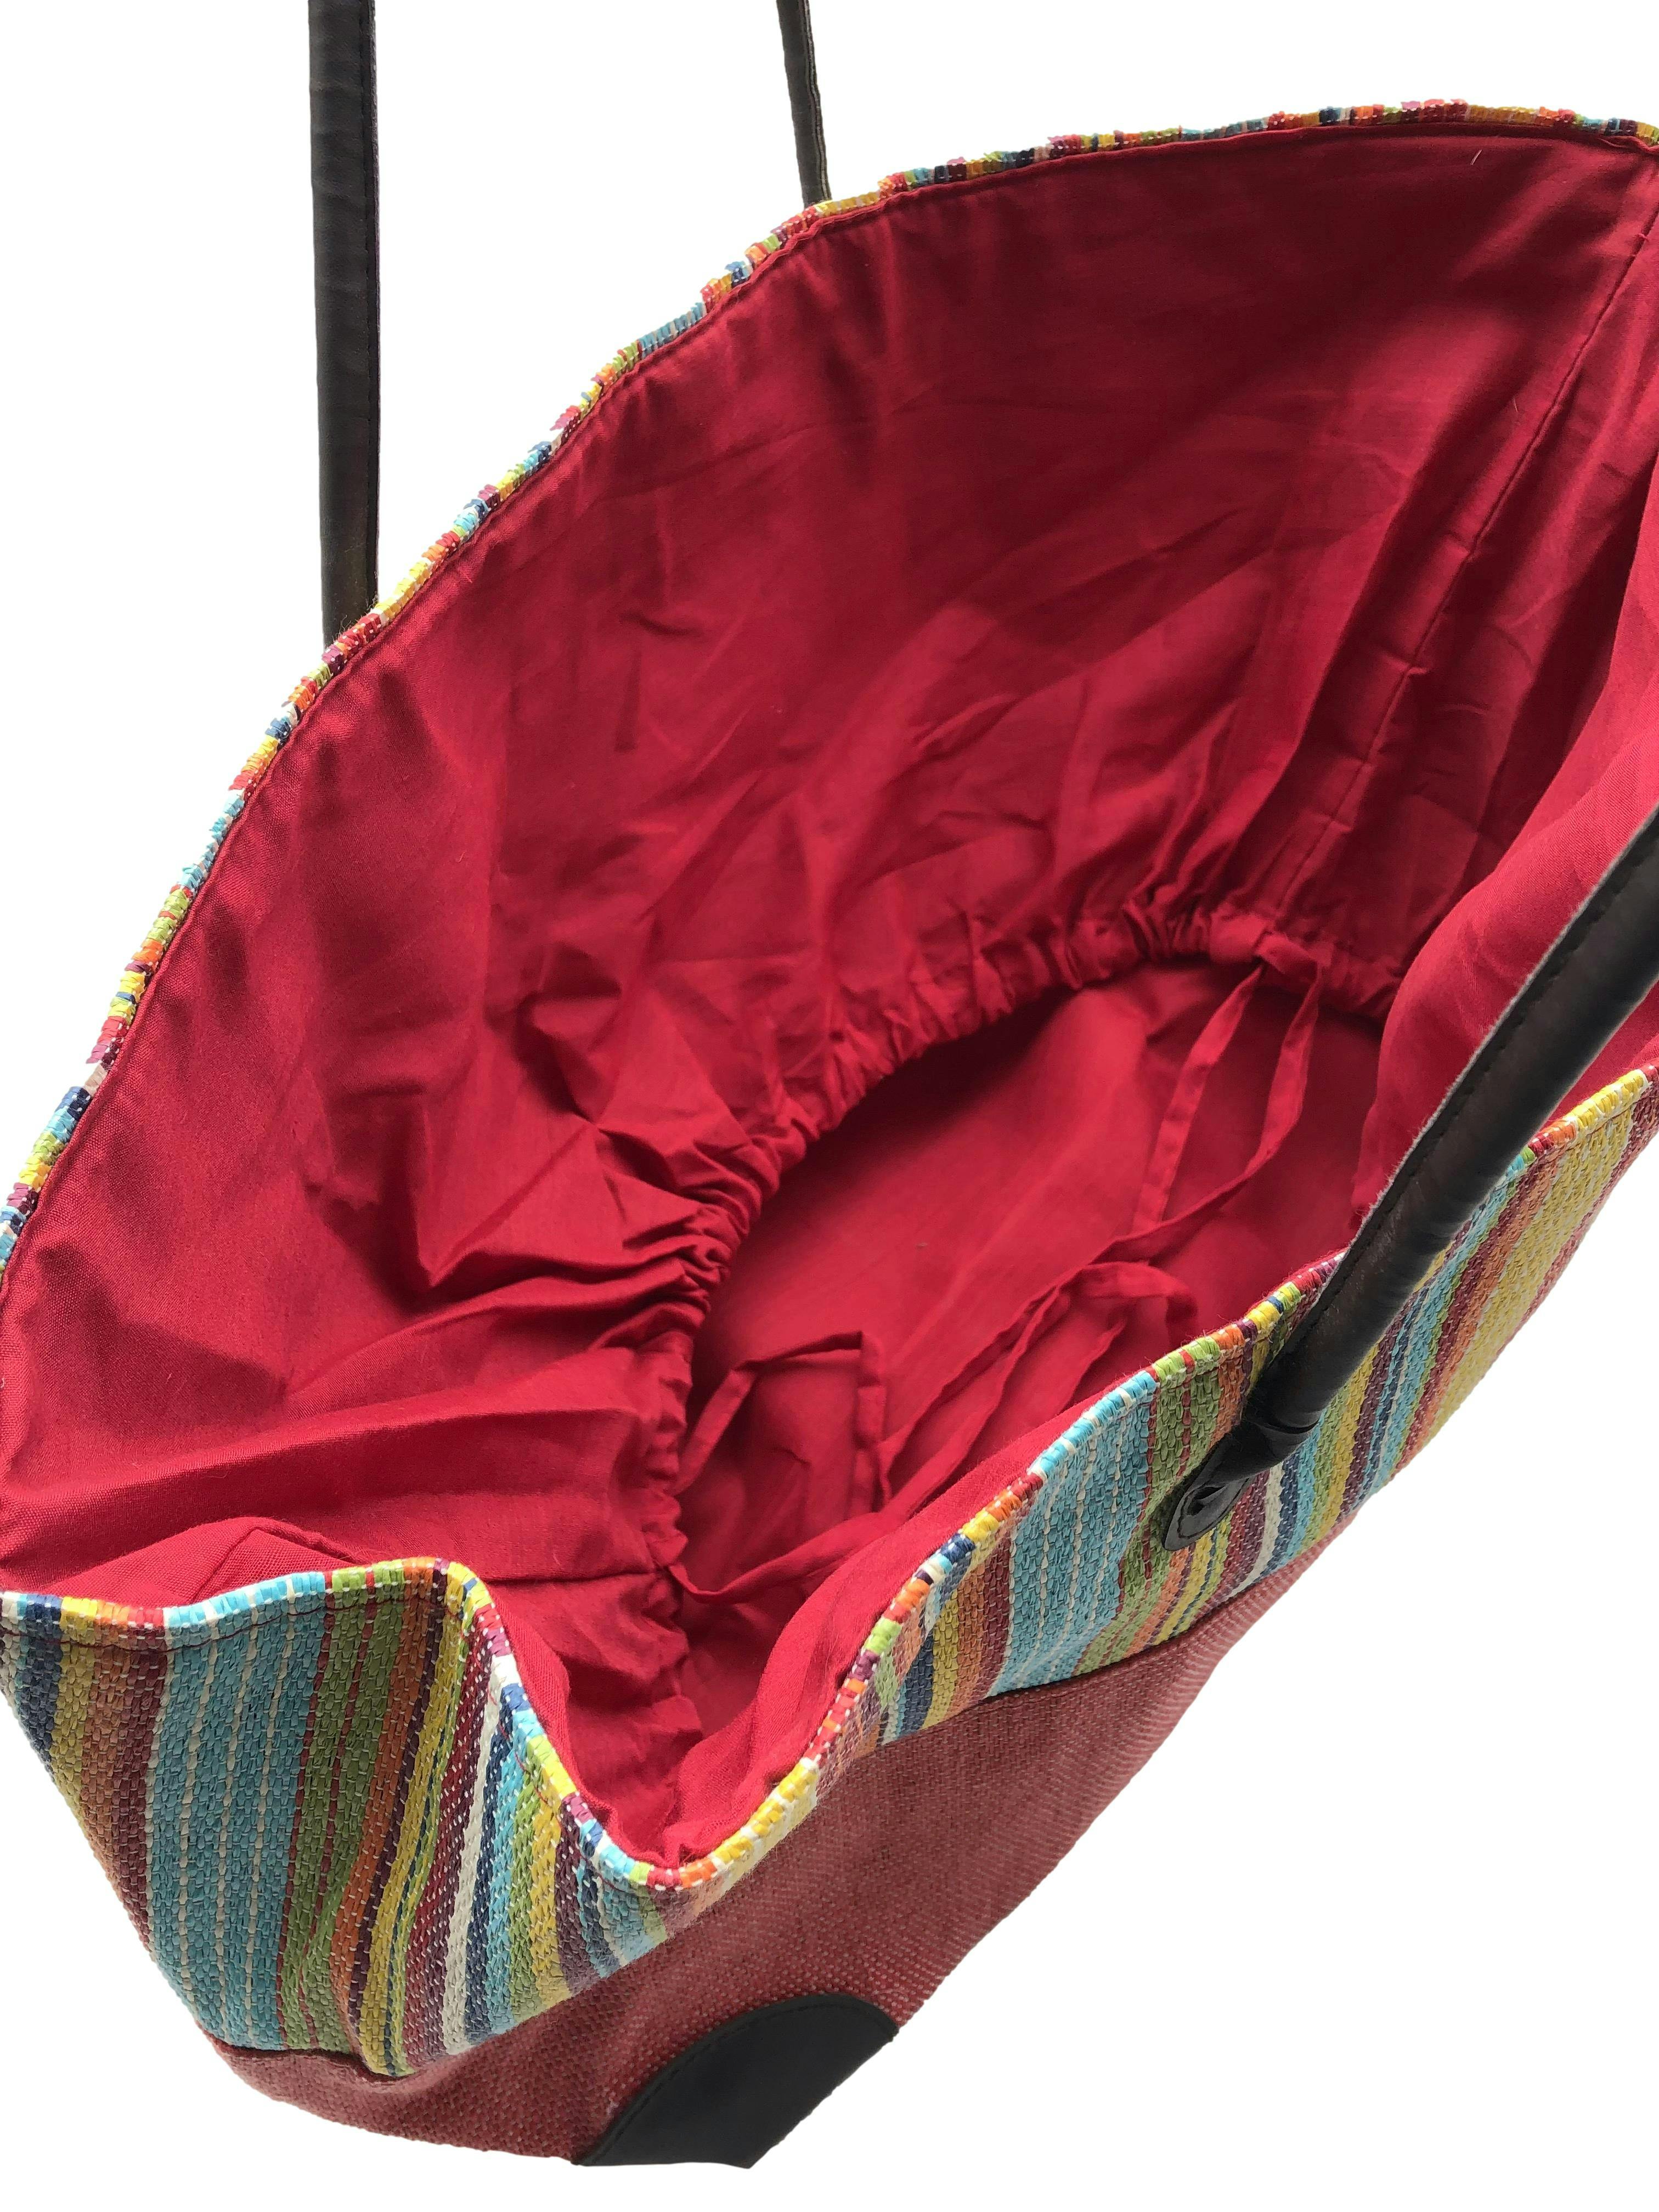 Bolso playero de colores con asas y esquinas de cuerina marrón. Nuevo con etiqueta. Medidas 50x30x22cm